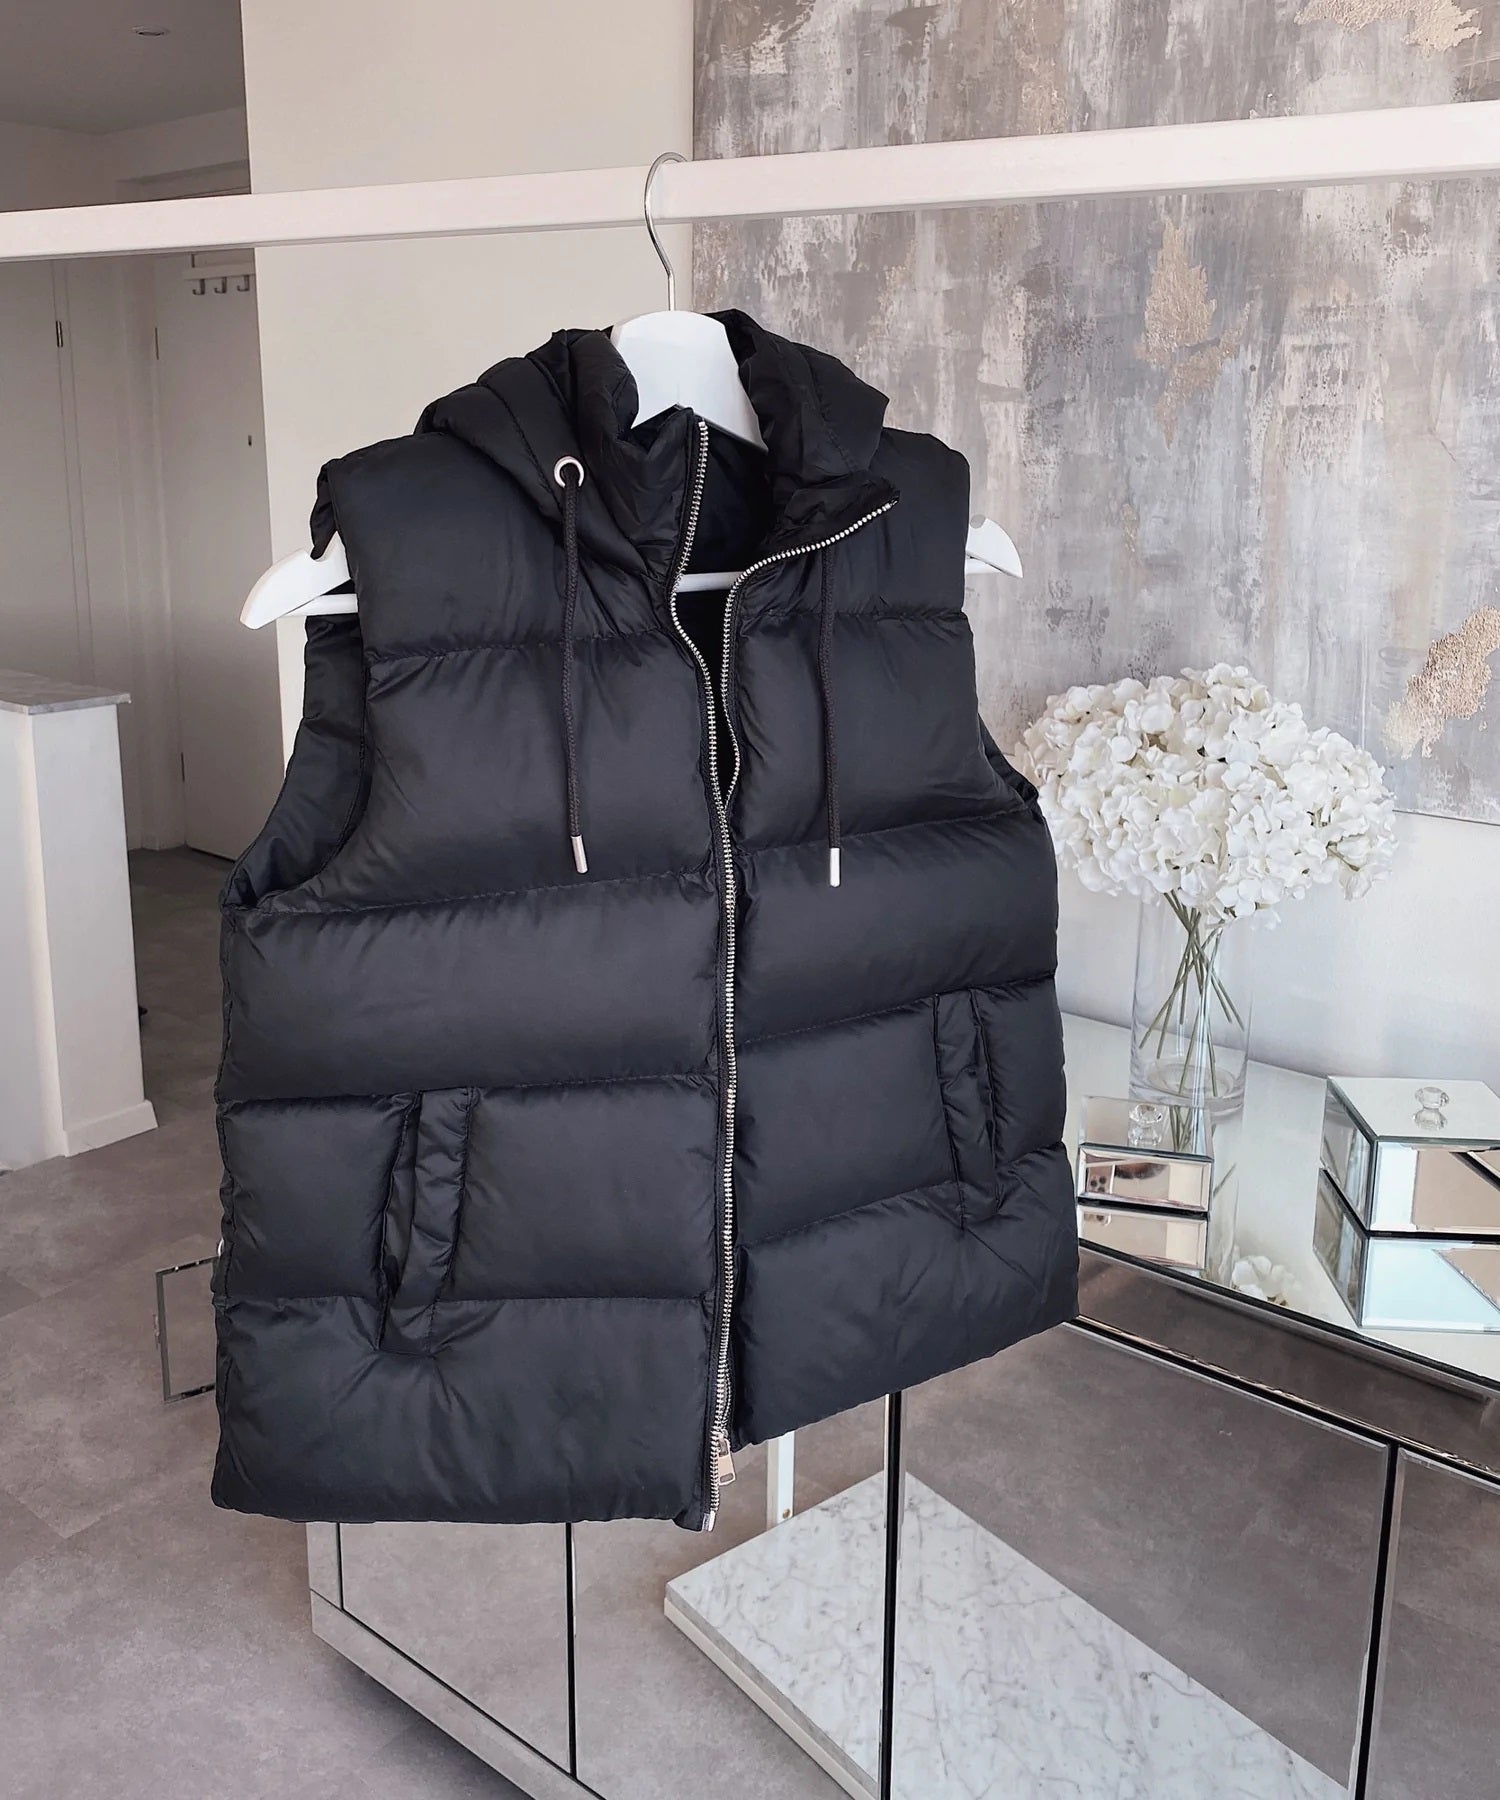 Hooded Gilet Sleeveless Jacket Full Zip For Women-Fp710 LJKT-2034-Black